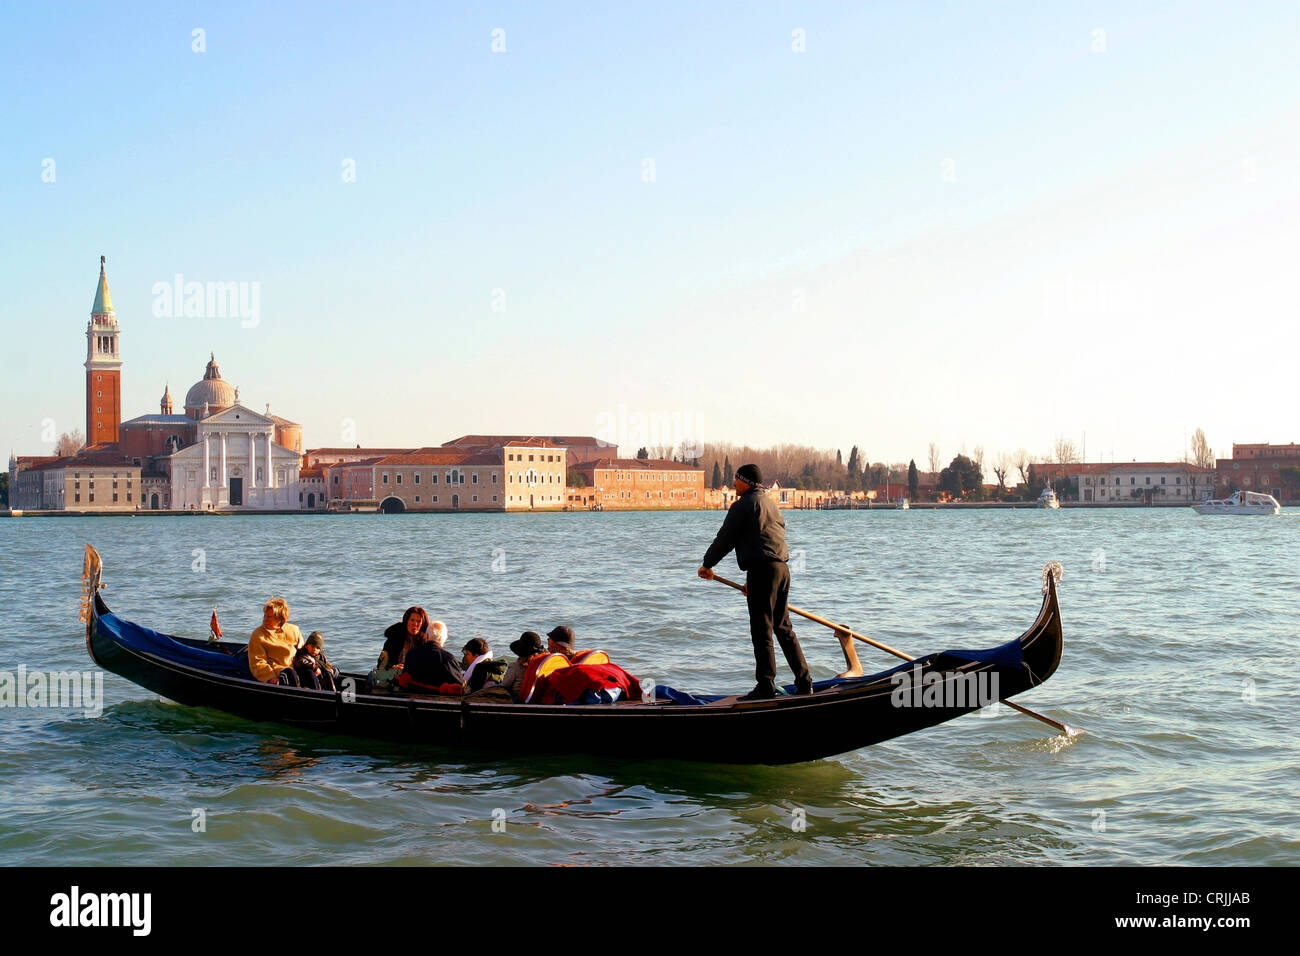 Canal con góndolas, partiendo con turistas, el Campanile en el fondo, Italia, Venecia Foto de stock